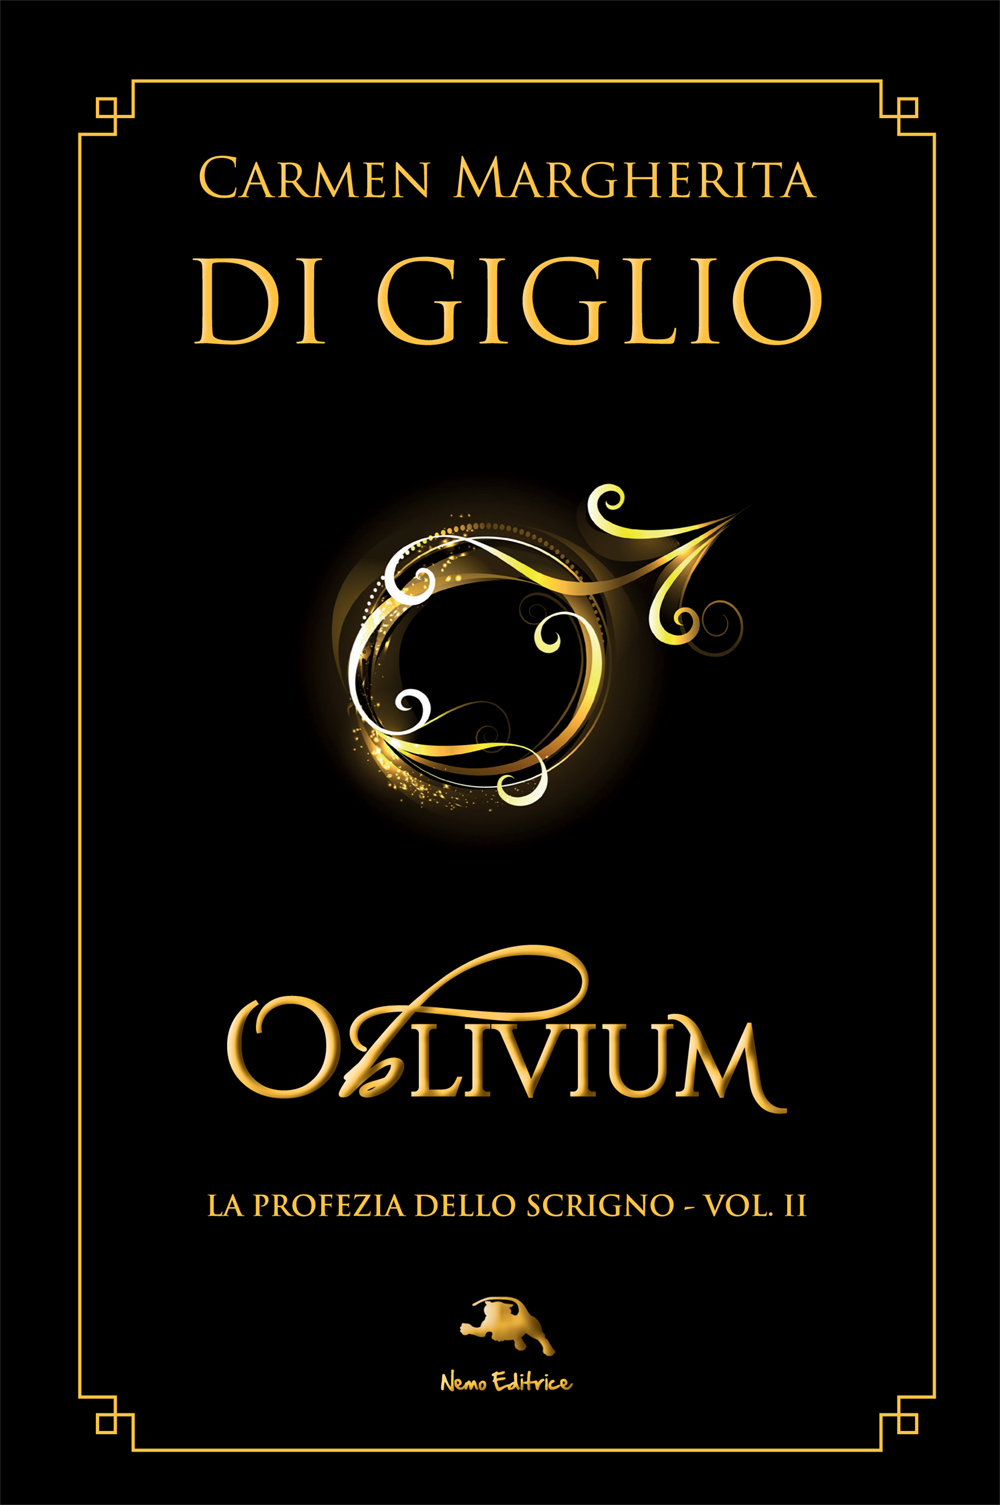 Oblivium hardcover